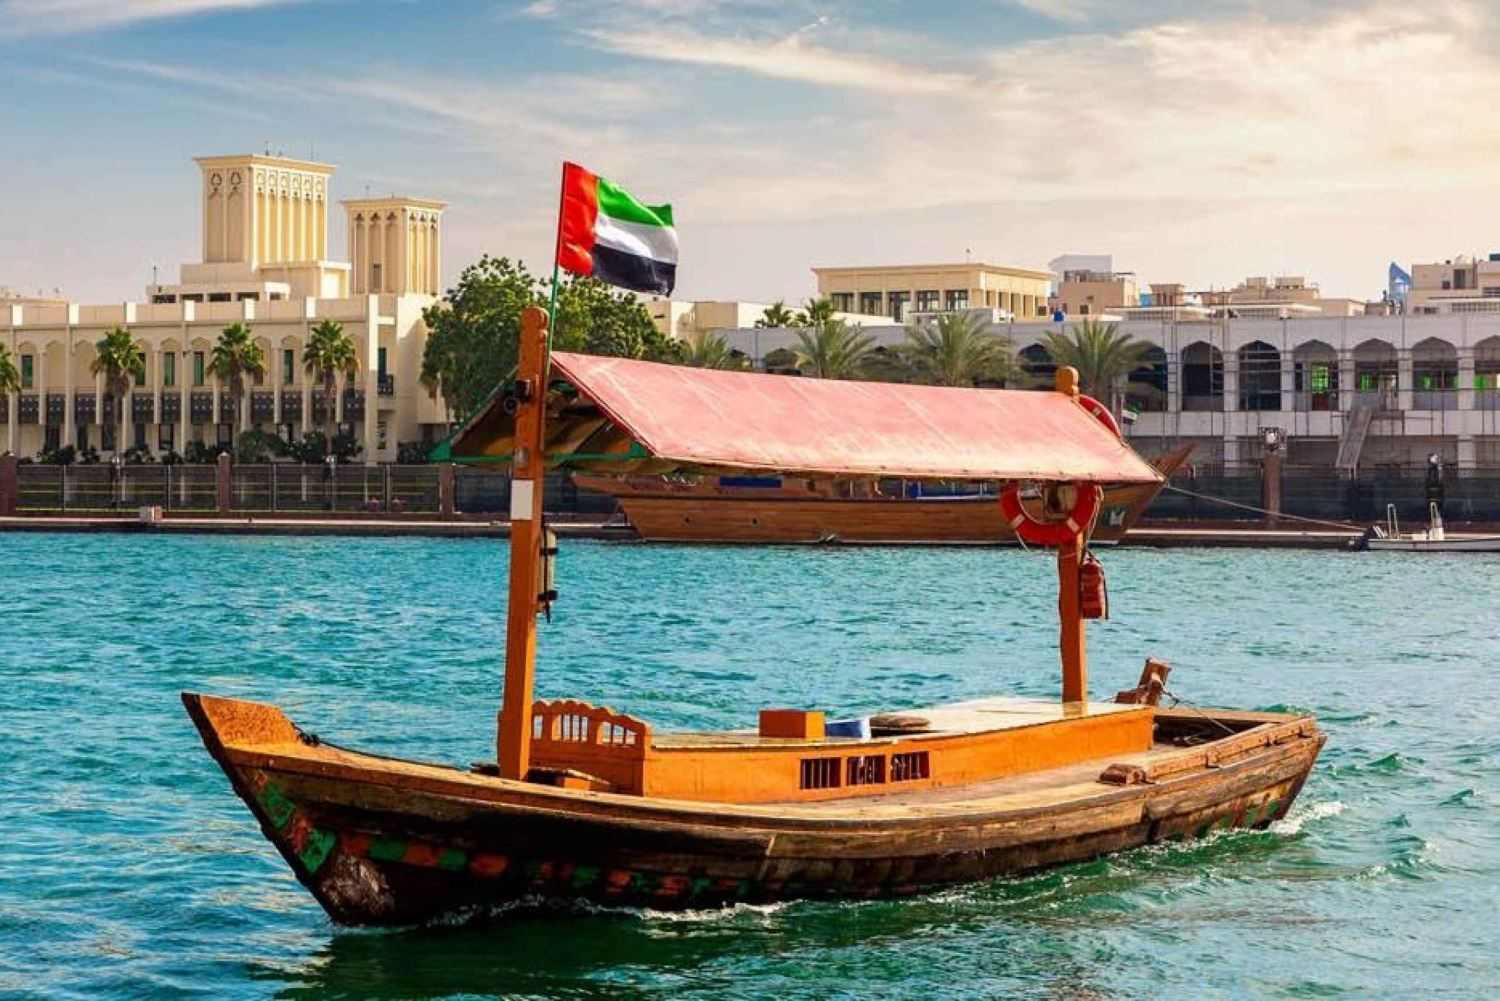 Tour de la ciudad tradicional de Dubai con zoco de especias y oro